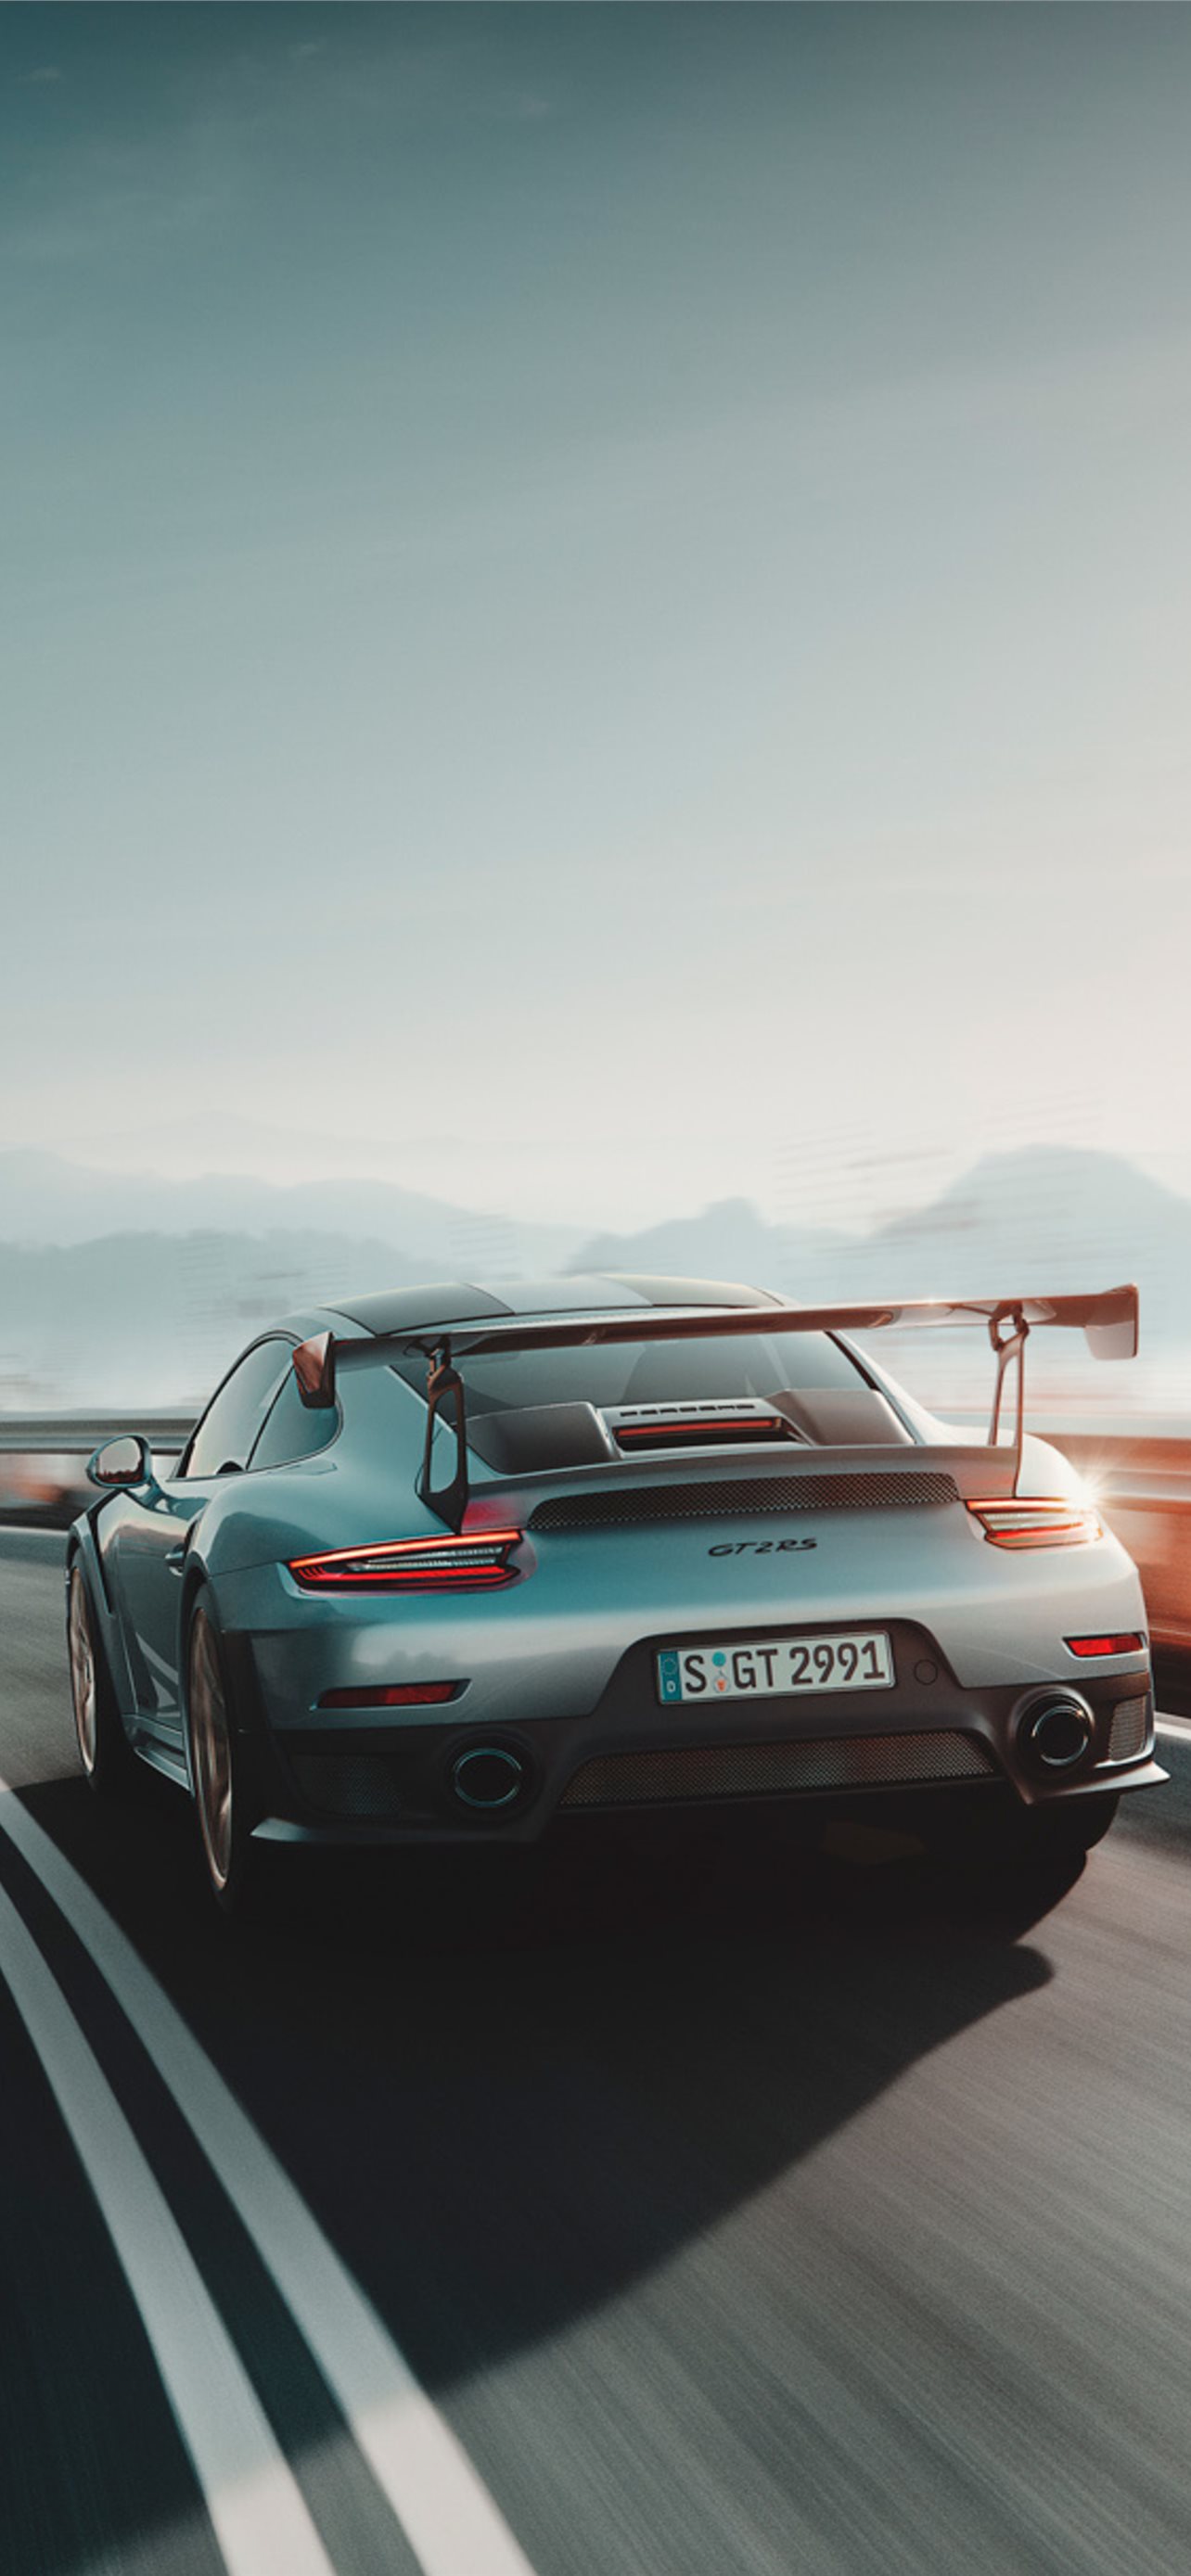 Xem ngay những hình nền cho iPhone của Porsche GT2 RS cực kỳ đẹp mắt và mang đậm tính thẩm mỹ. Với những đường nét tinh tế và màu sắc tuyệt đẹp, chiếc xe này sẽ khiến người dùng điện thoại của bạn không thể ngừng nhìn vào màn hình.